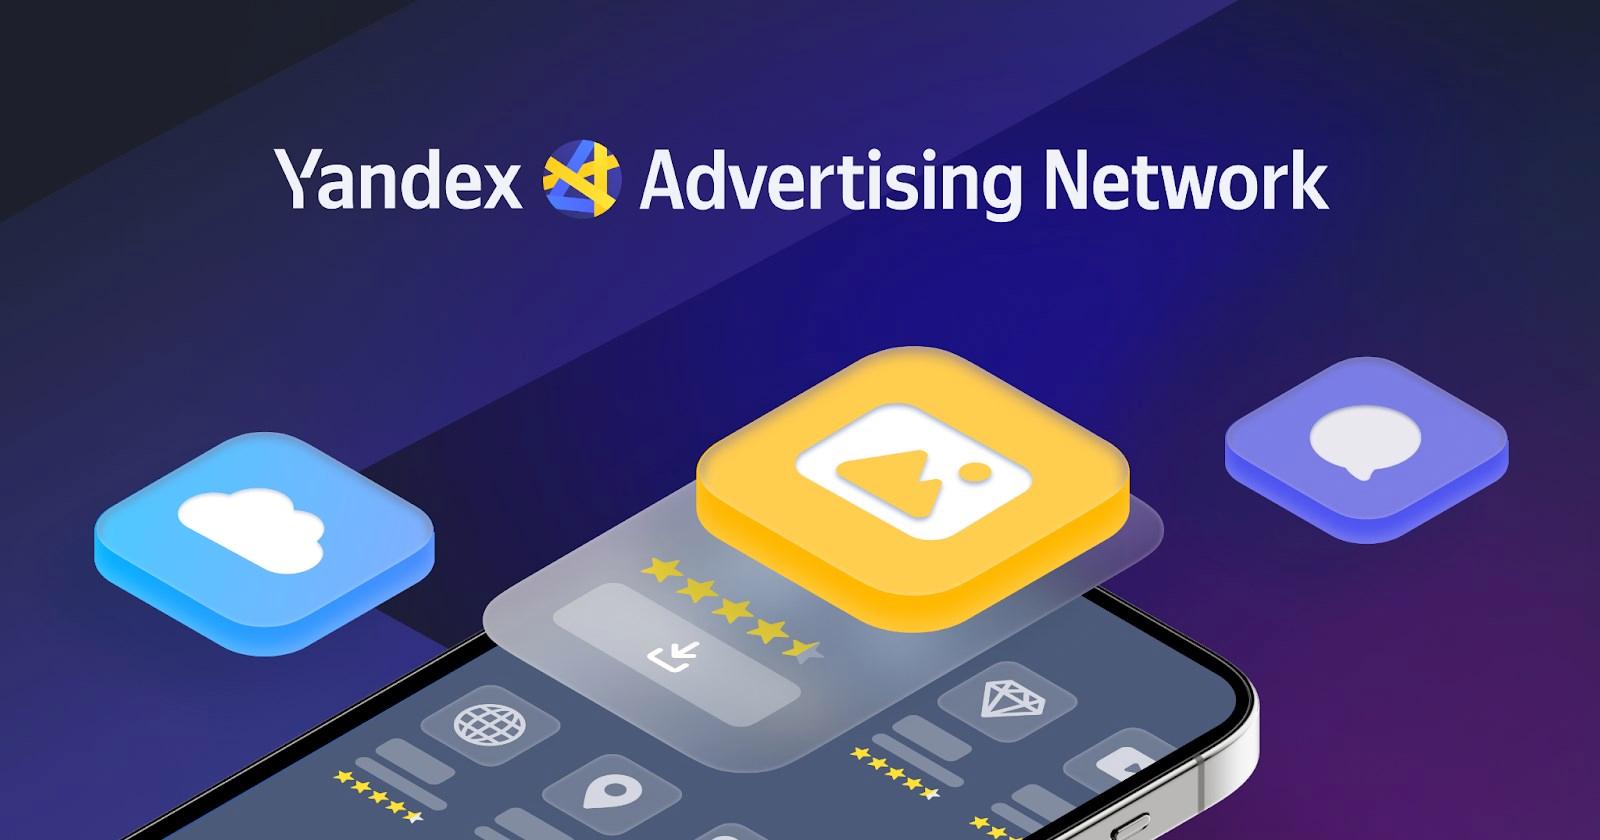 Yandex Reklam Ağı, firmalara gelirlerini artırma yolları sunuyor